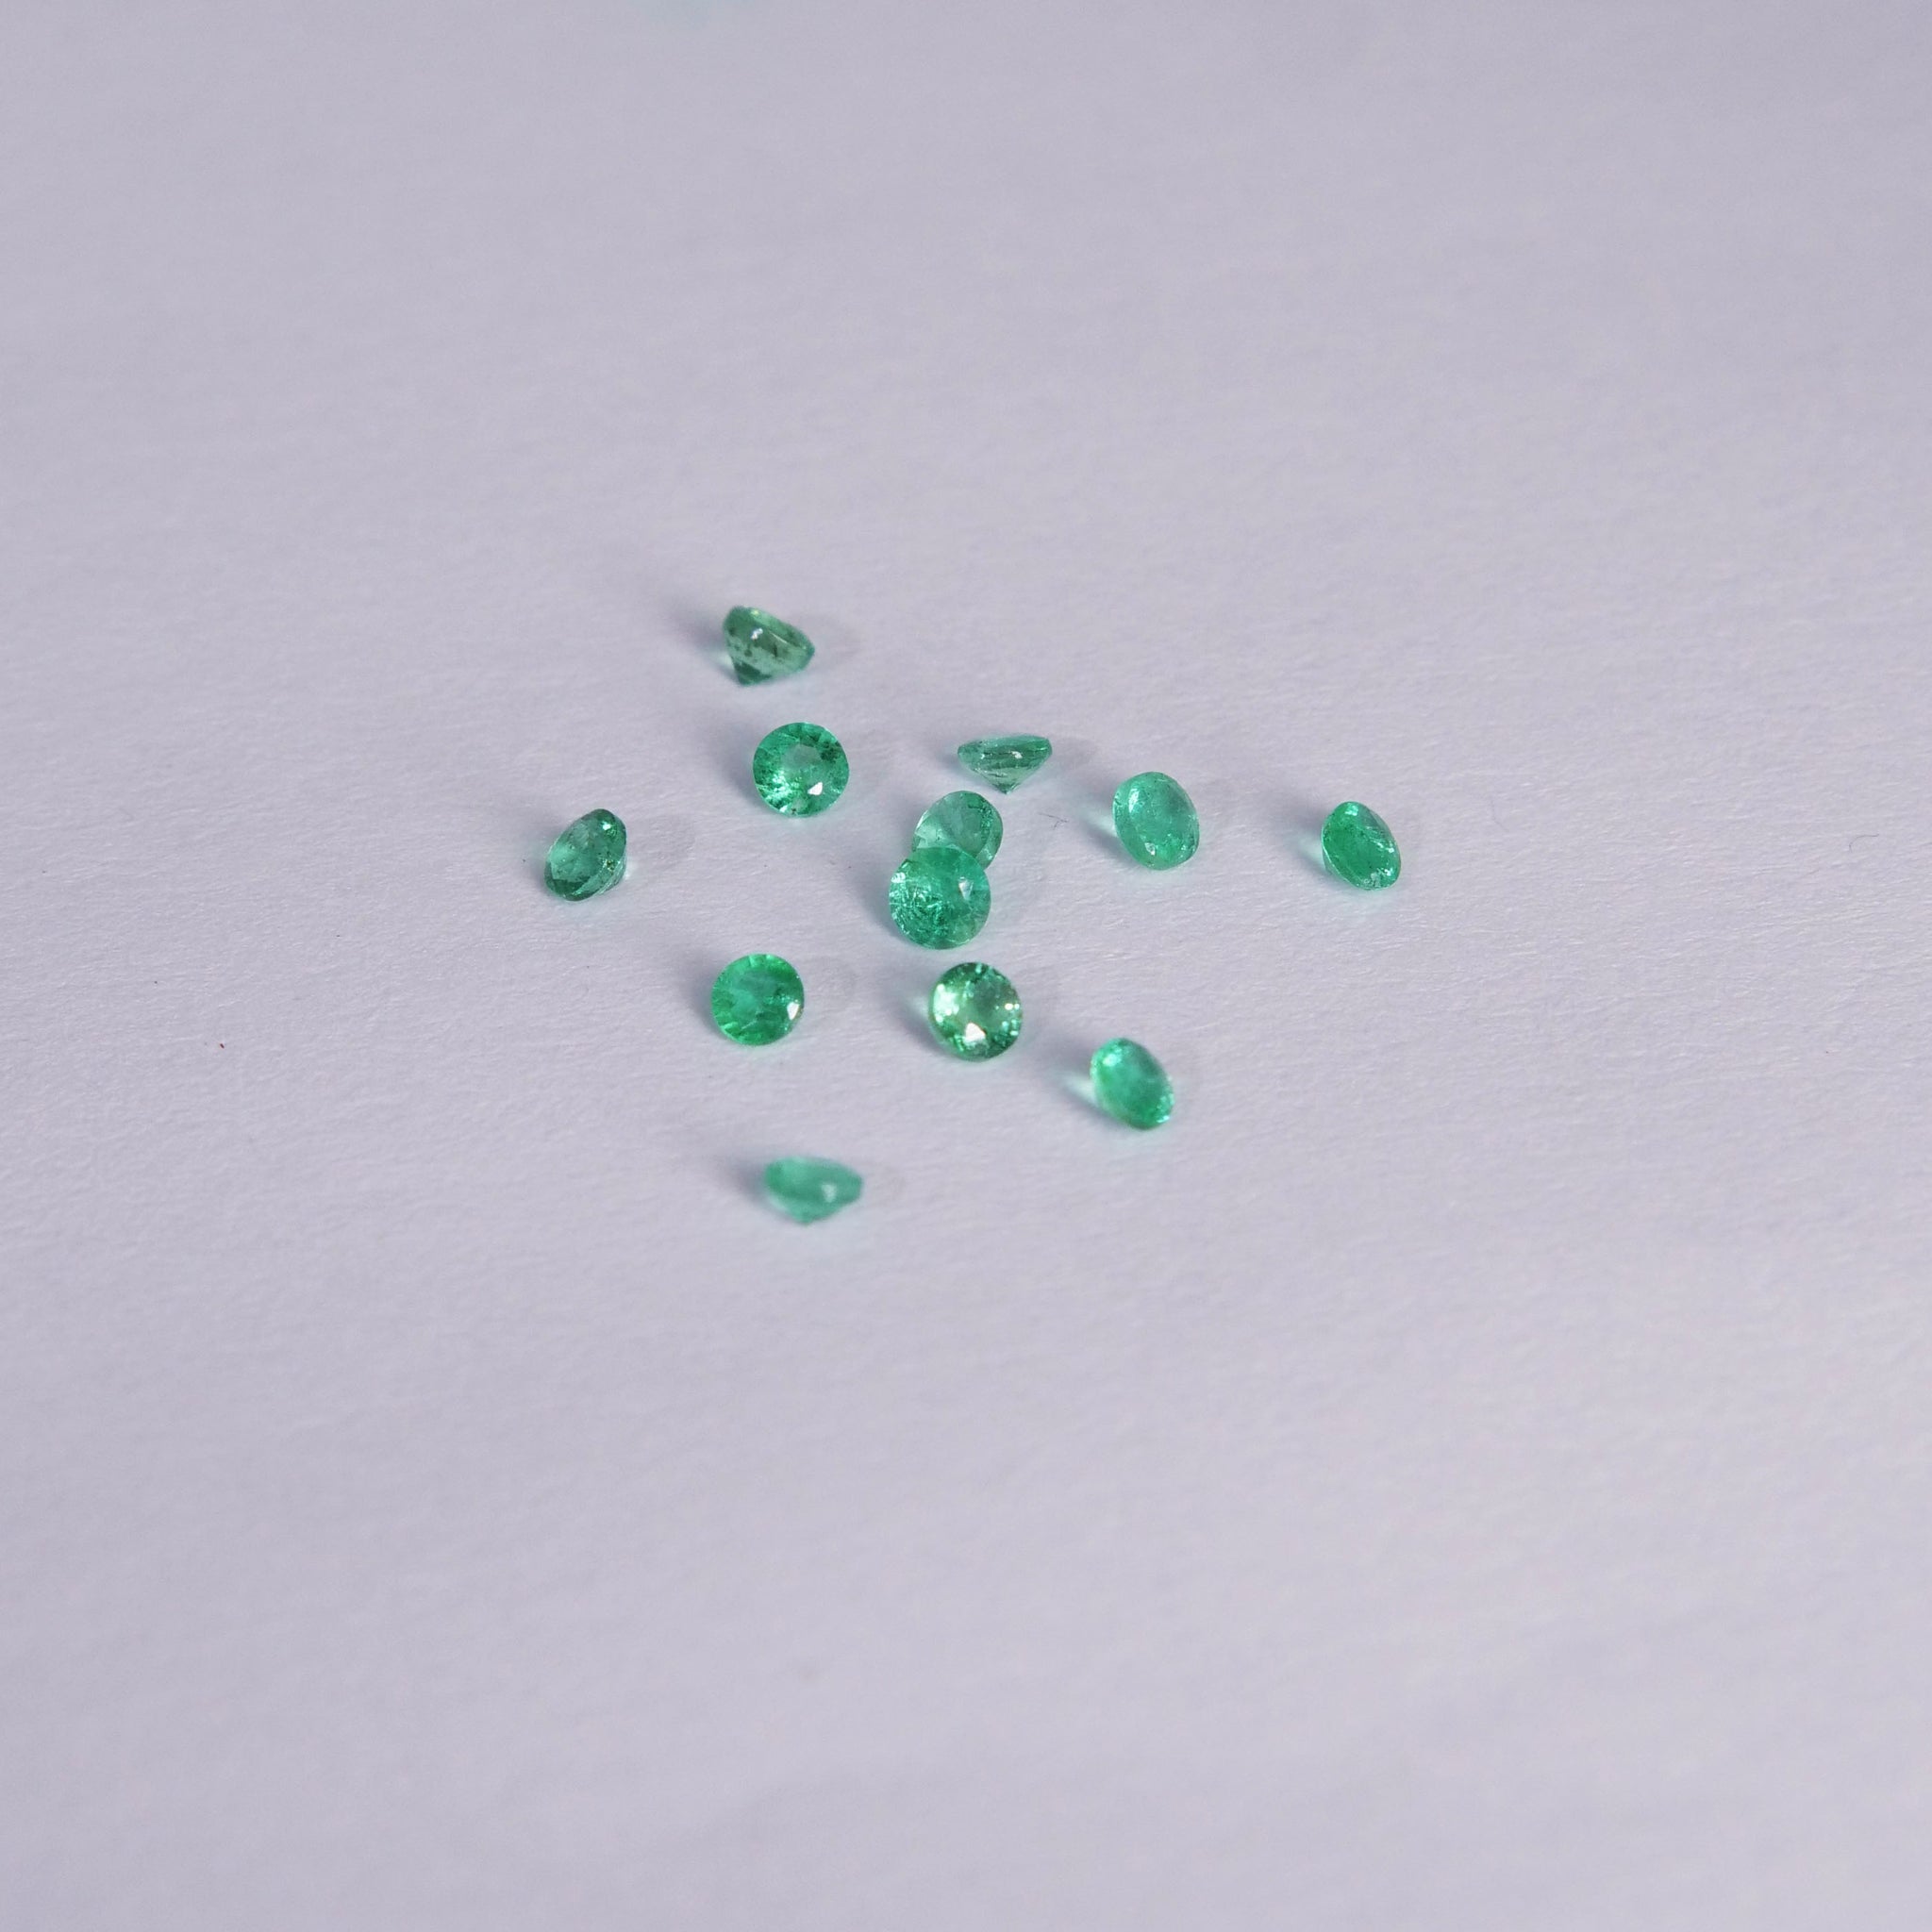 Chevron ivy leaves wedding band with 3 mm gemstone - Eden Garden Jewelry™